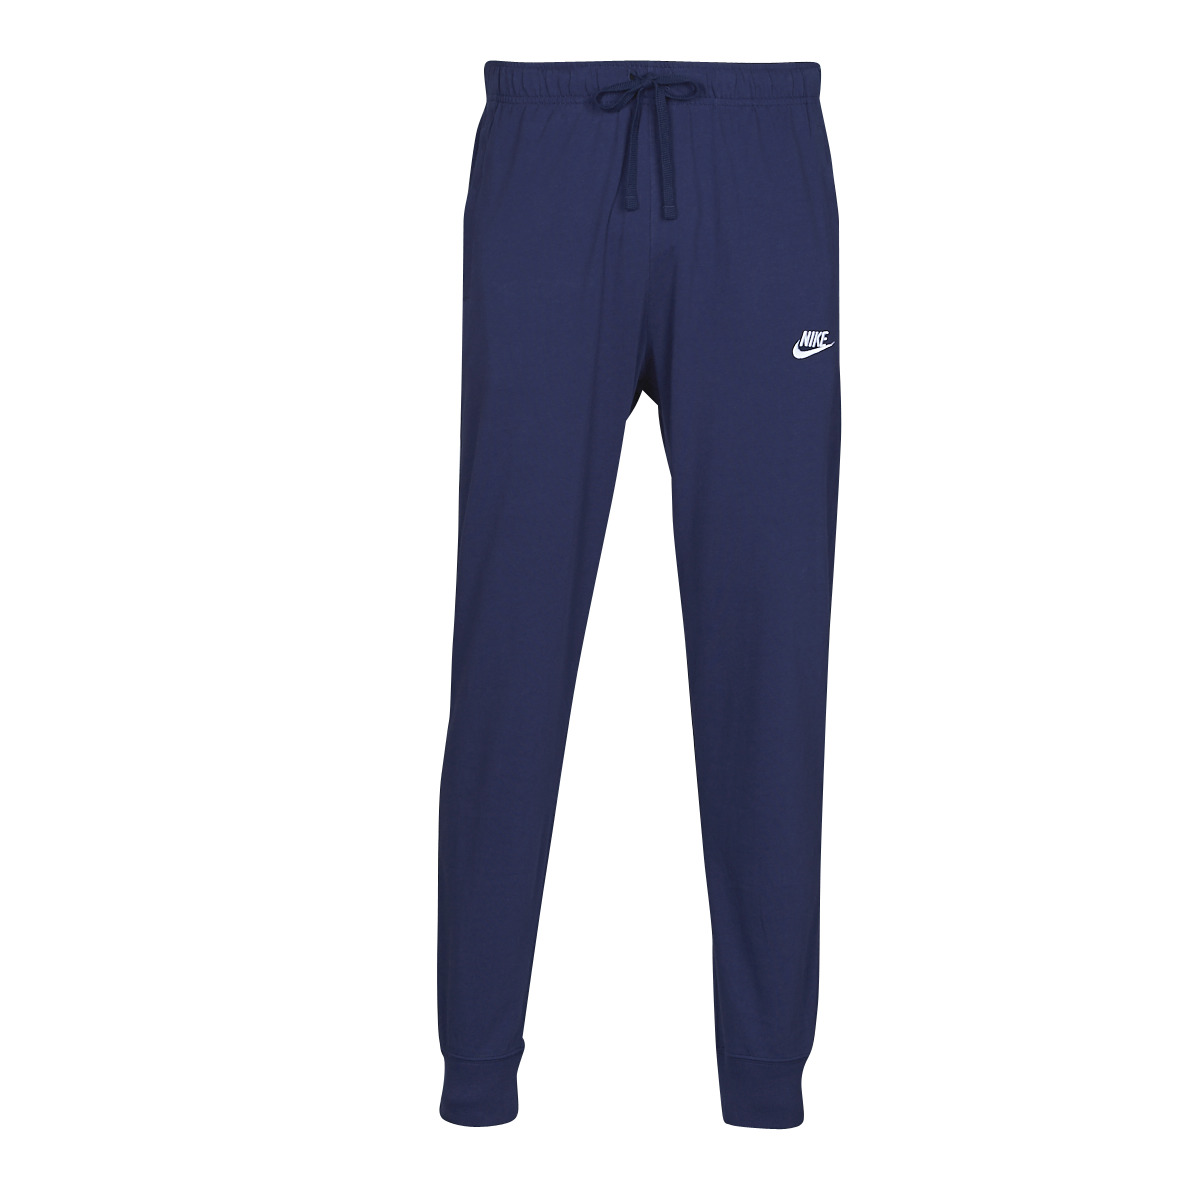 Textil Muži Teplákové kalhoty Nike NSCLUB JGGR JSY Tmavě modrá / Bílá